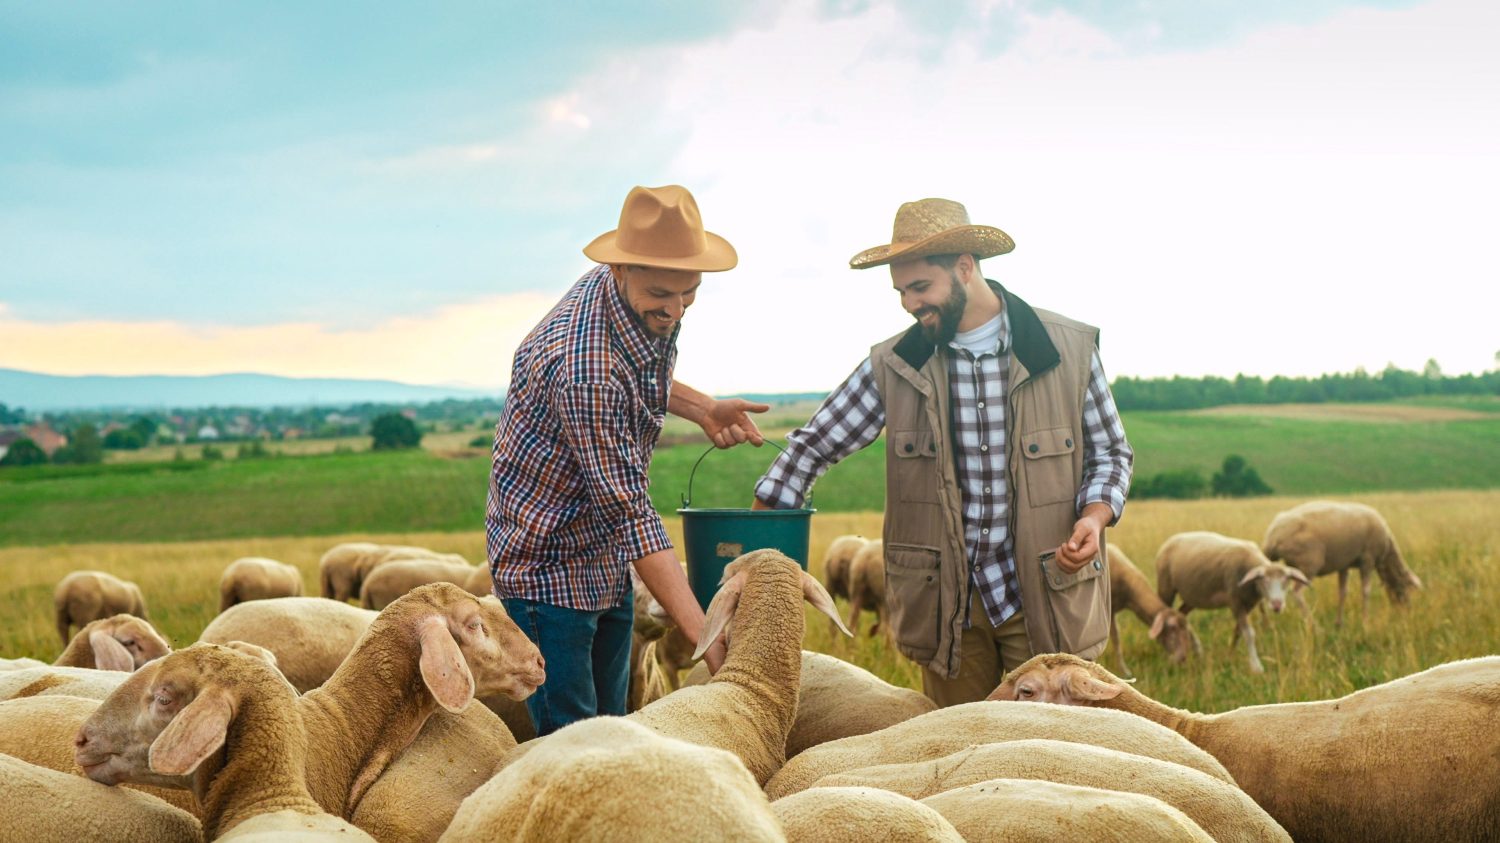 Allegri giovani pastori caucasici bei maschi in cappelli che sorridono e nutrono le pecore nel campo.  All'aperto.  Giornata lavorativa degli agricoltori nella fattoria di campagna degli animali.  Gli amici uomini nutrono il bestiame.